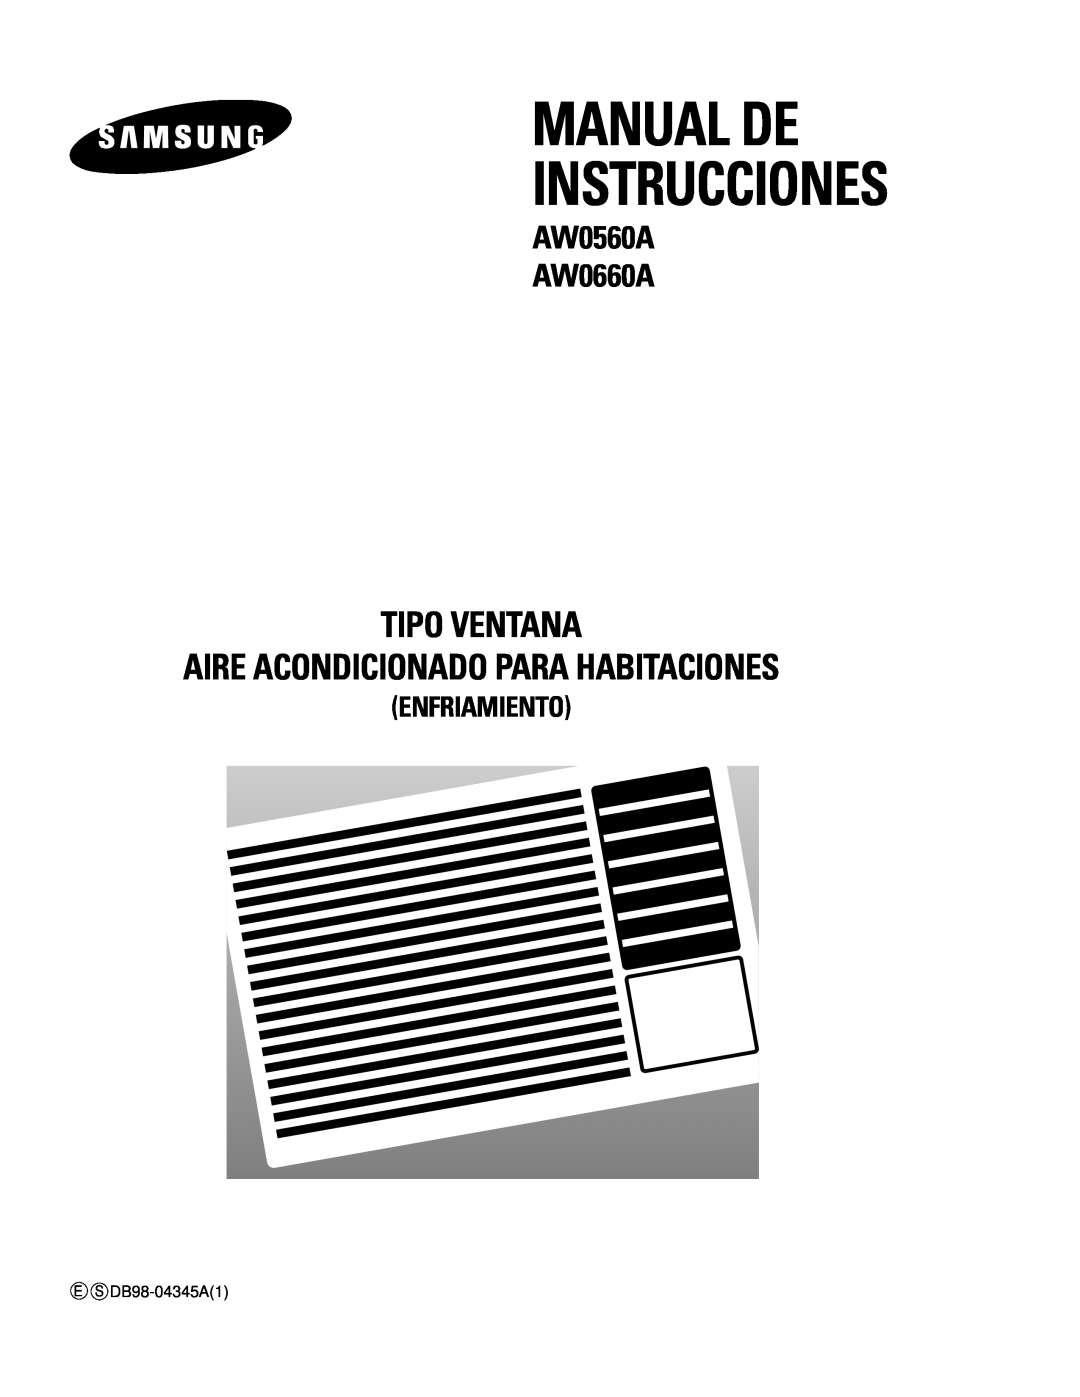 Samsung manual Manual De Instrucciones, Tipo Ventana Aire Acondicionado Para Habitaciones, AW0560A AW0660A 